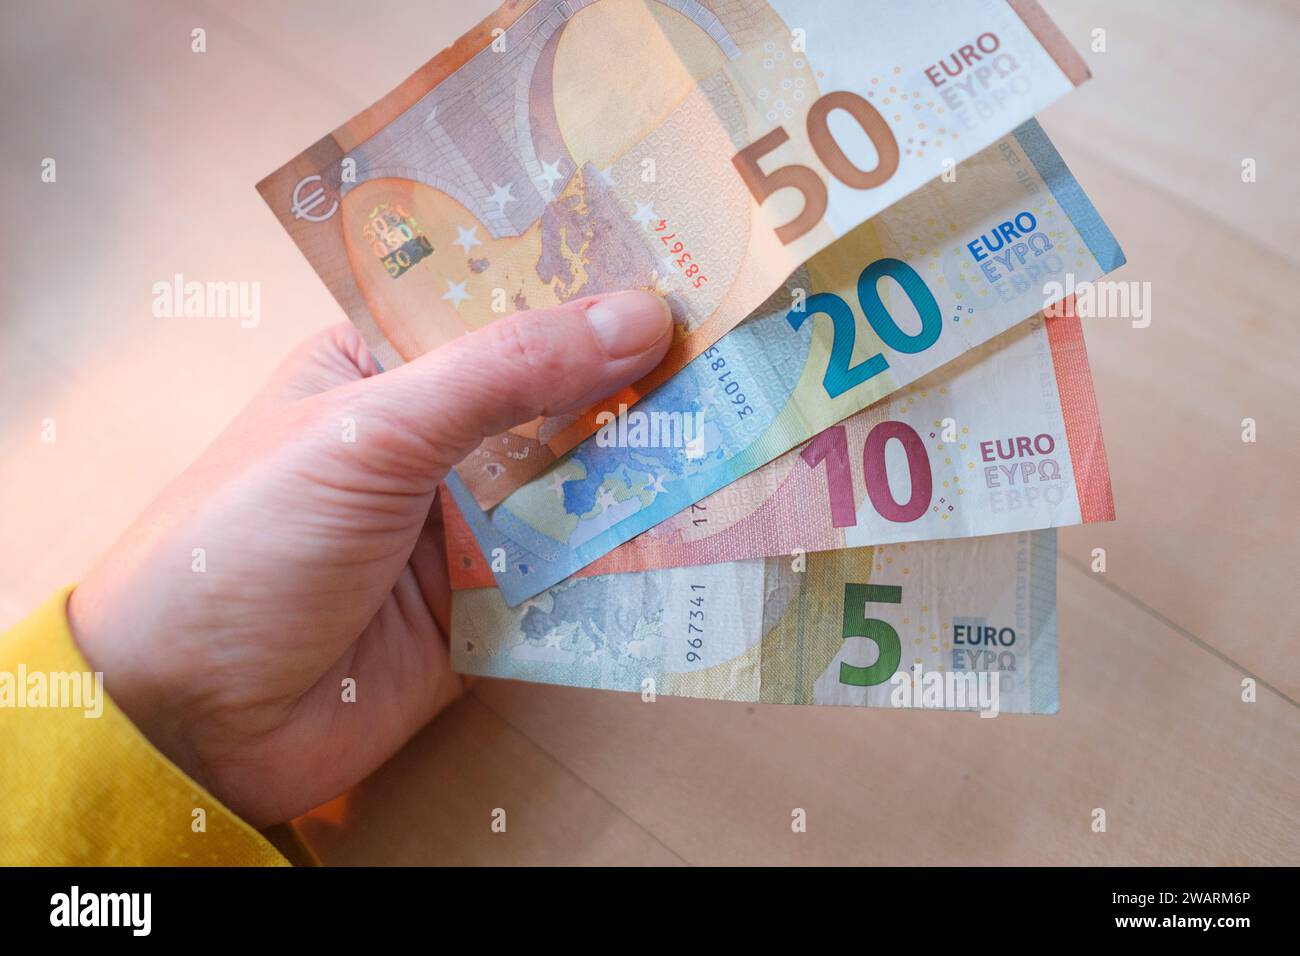 Main de femme tenant divers billets en euros Banque D'Images